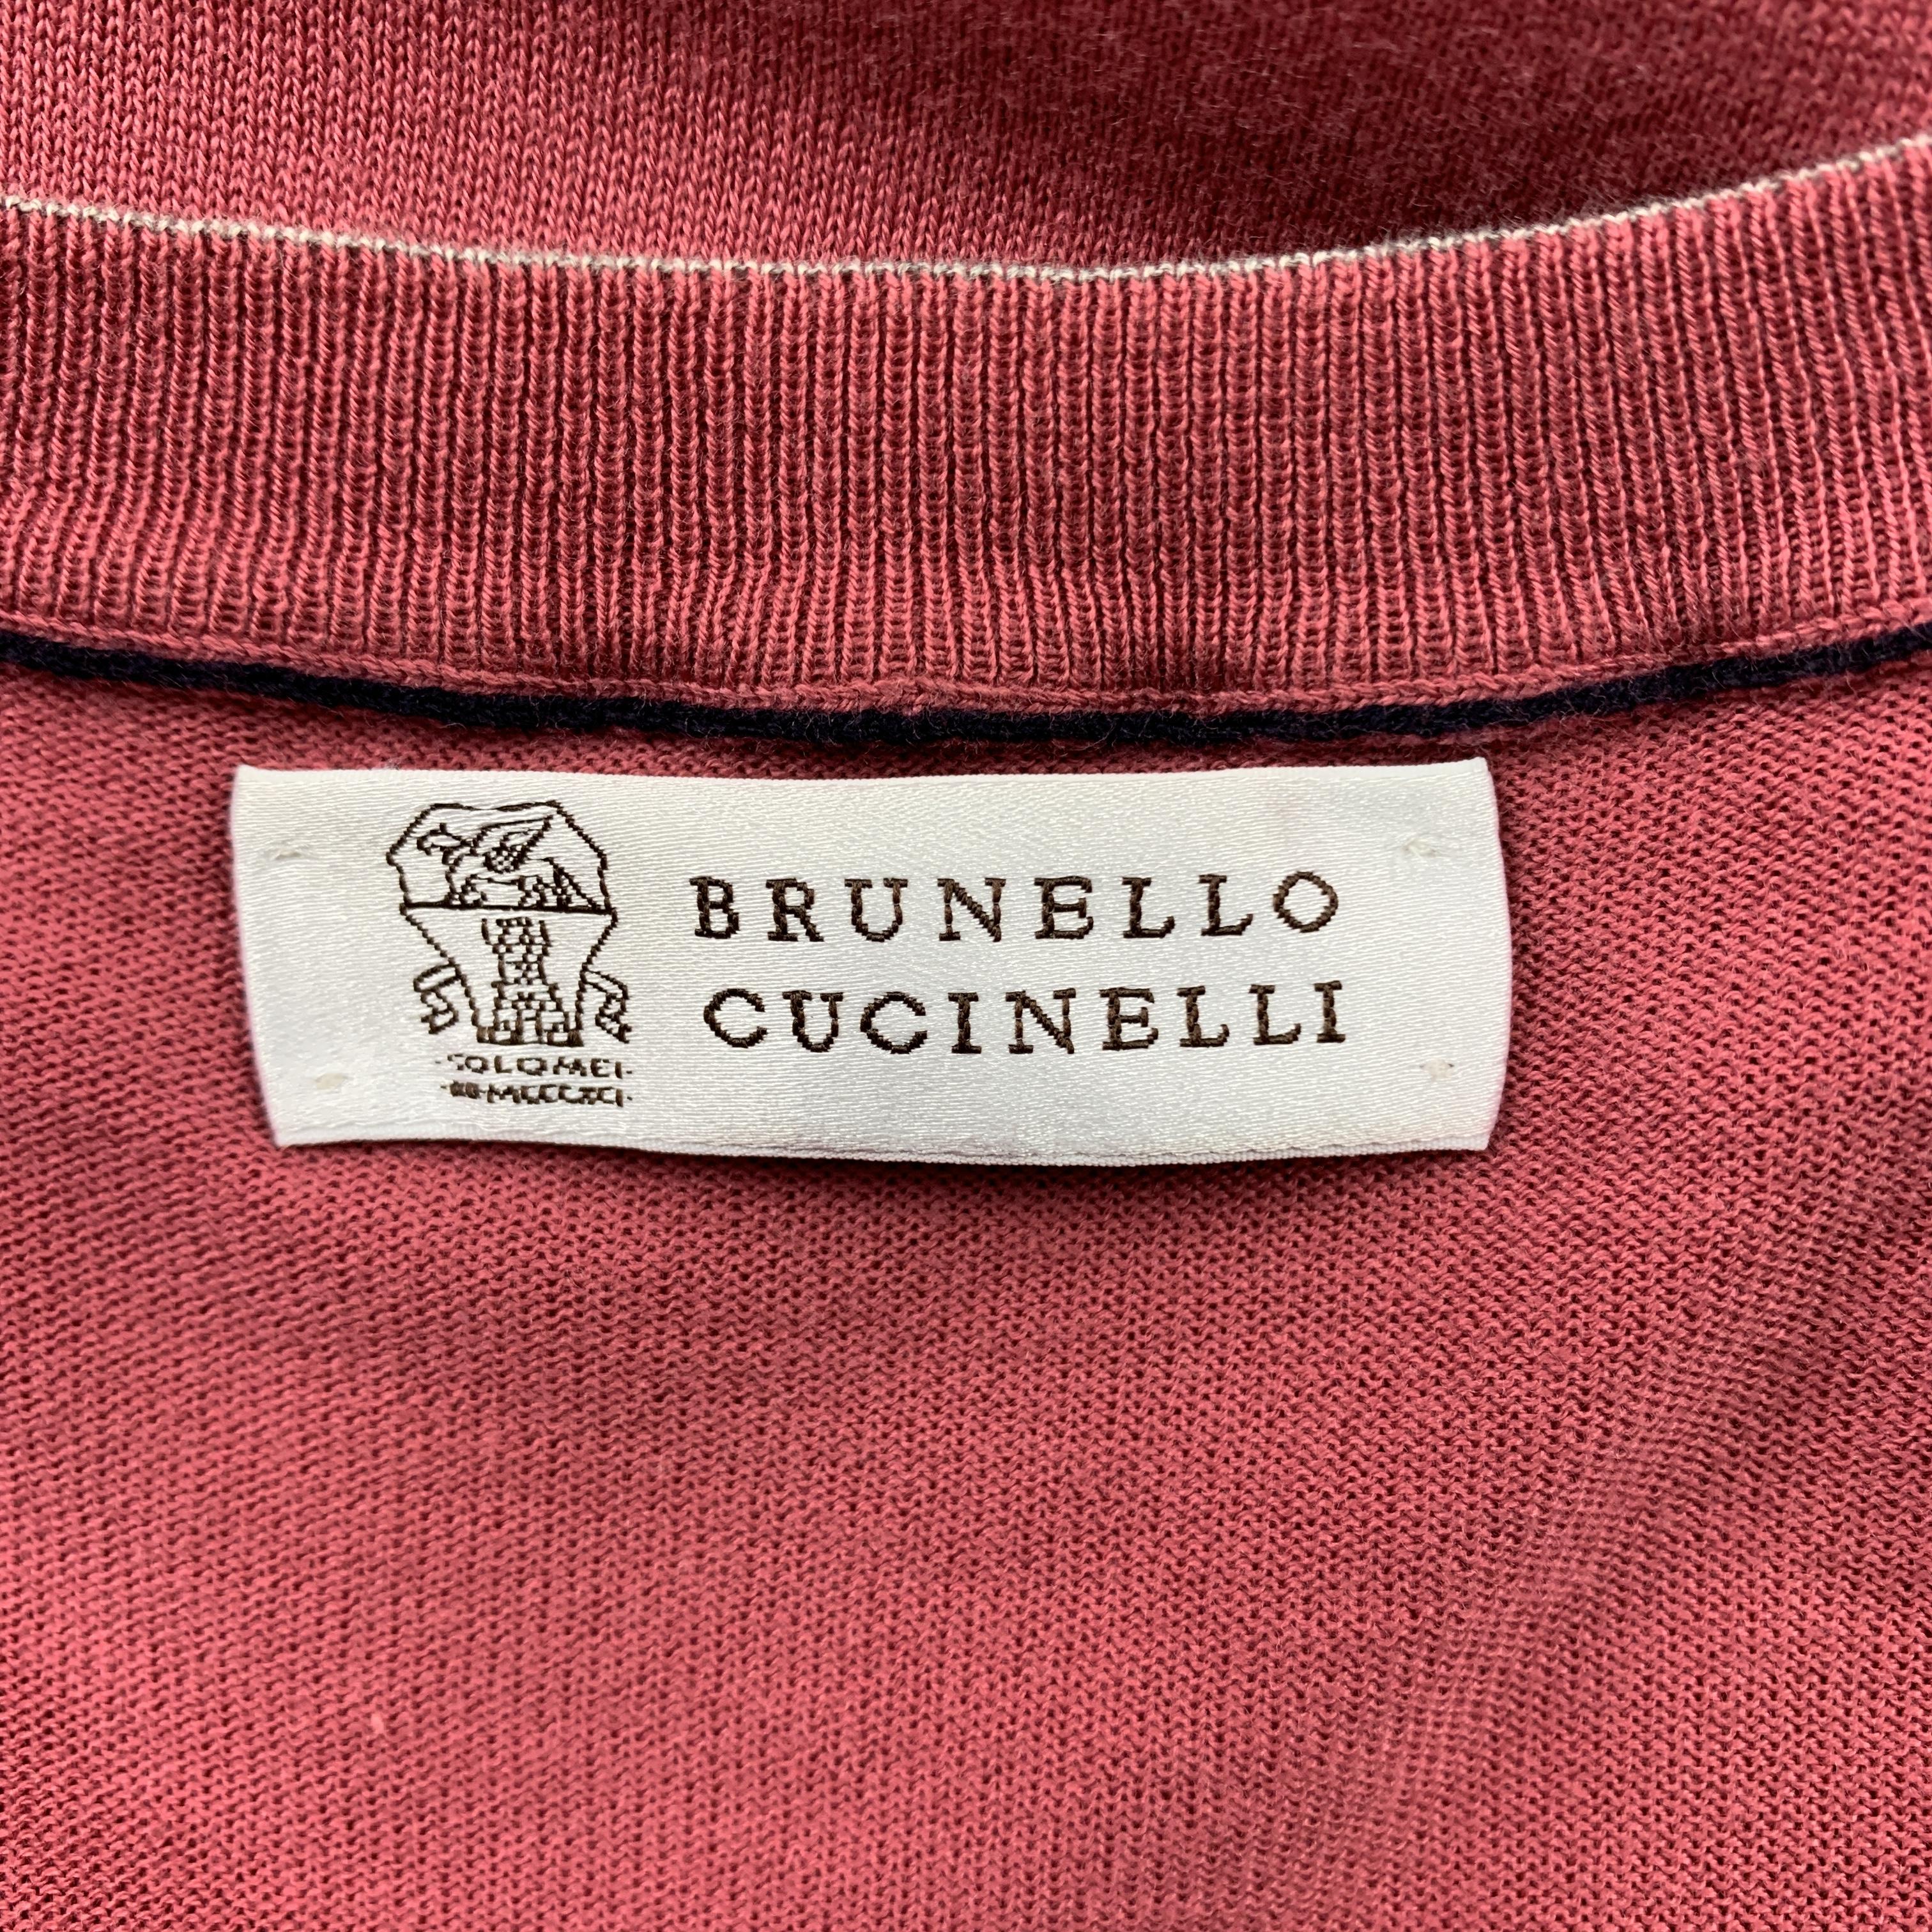 Men's BRUNELLO CUCINELLI Size 40 Salmon Cotton V-Neck Pullover